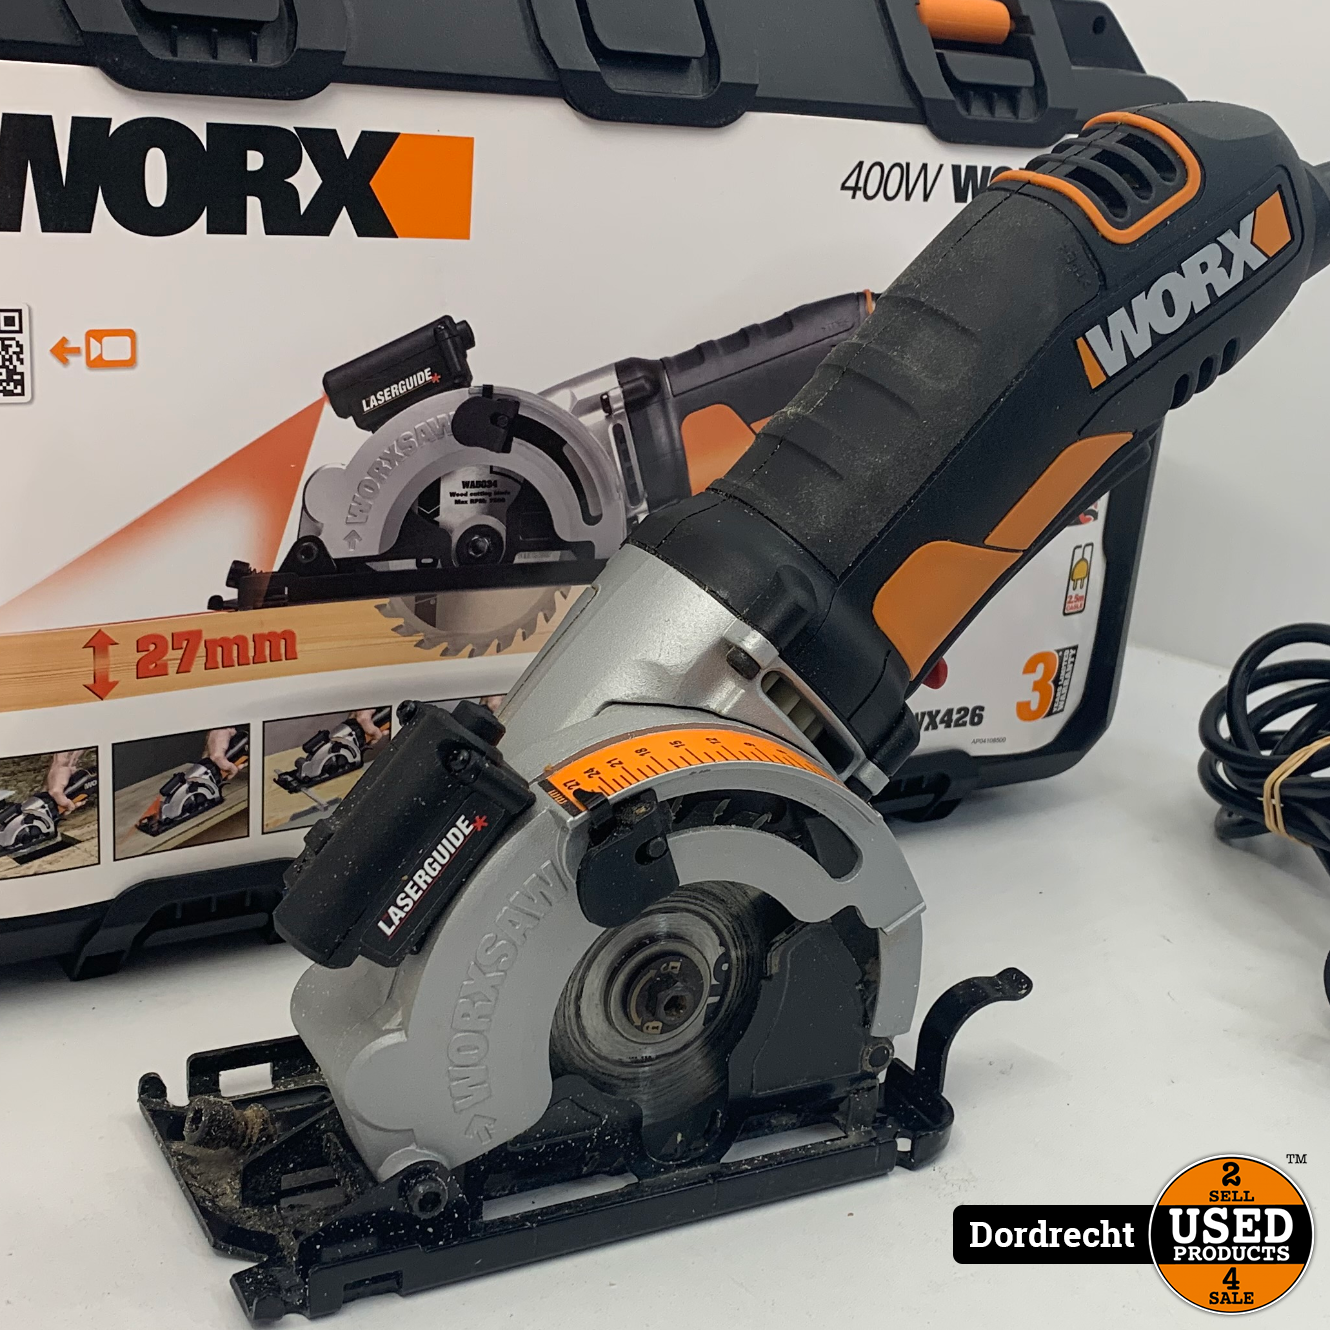 Worx WX426 handcirkelzaag 400W | In kist | Met garantie - Products Dordrecht